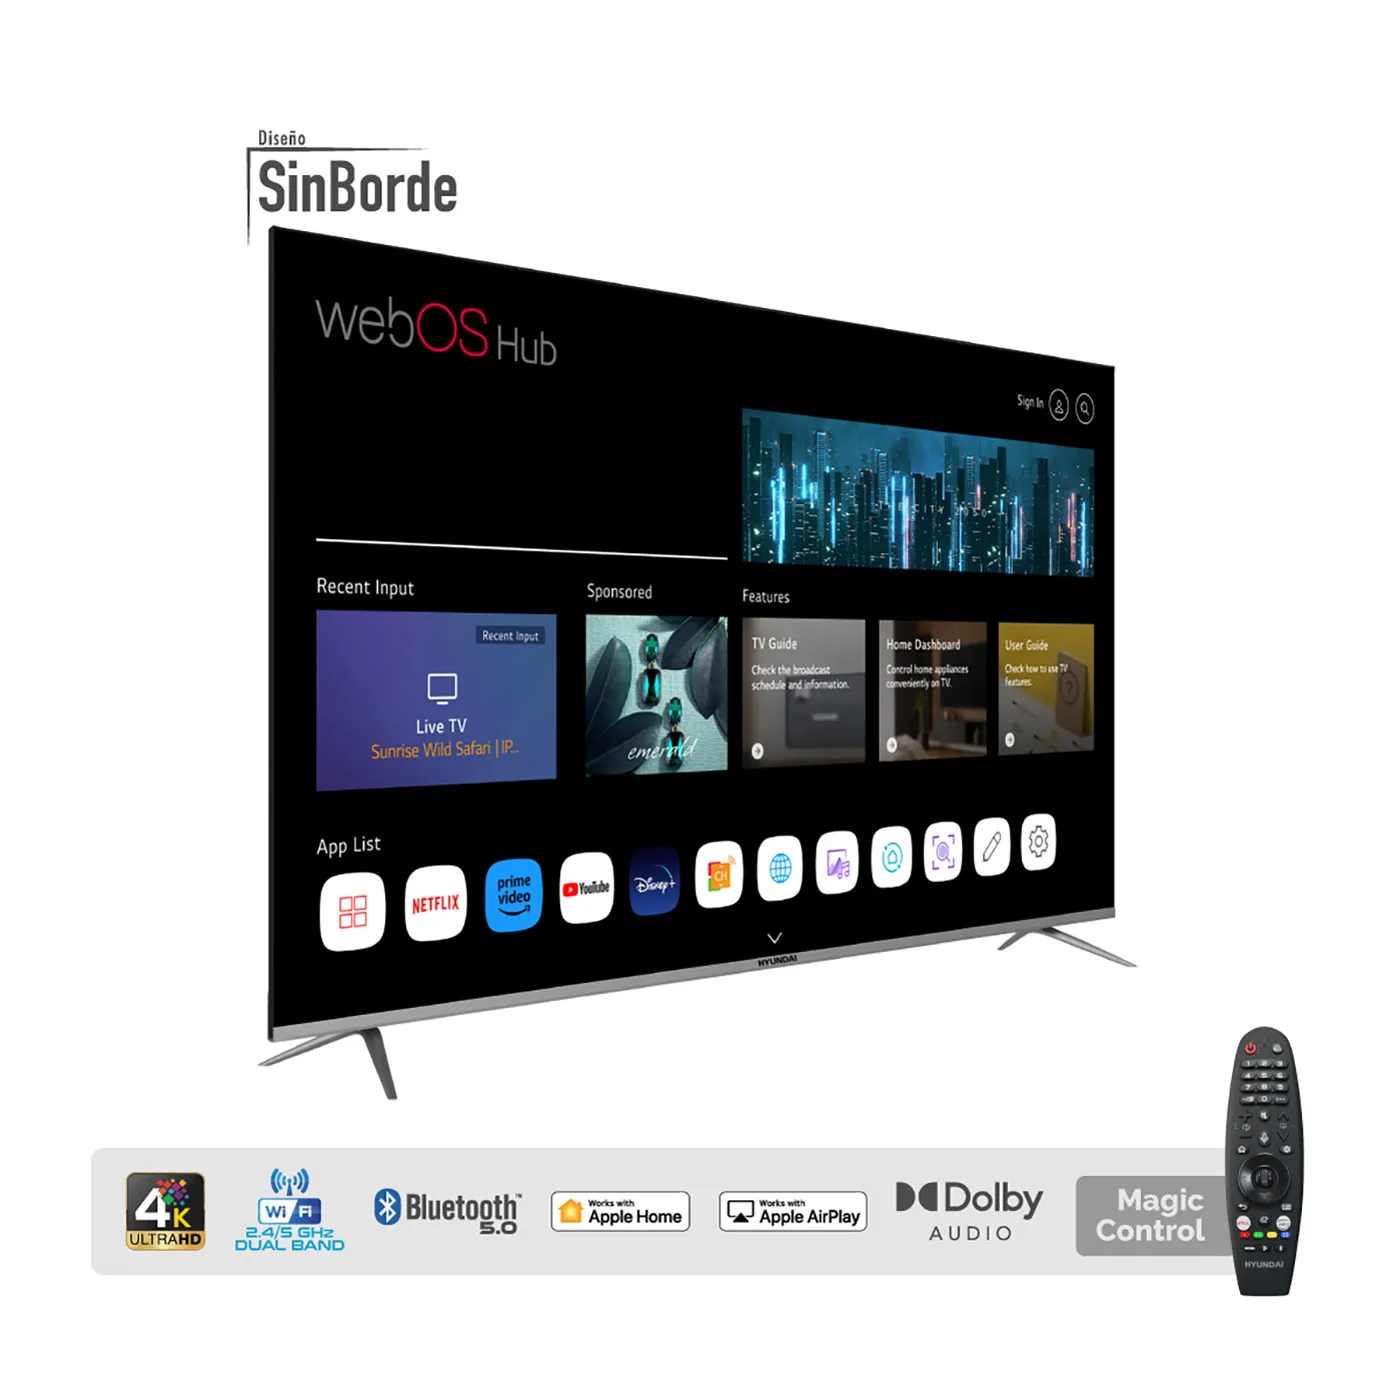 TV HYUNDAI 70"Pulgadas 177,8cm HYLED7002W4K 4K UHD LED Smart TV